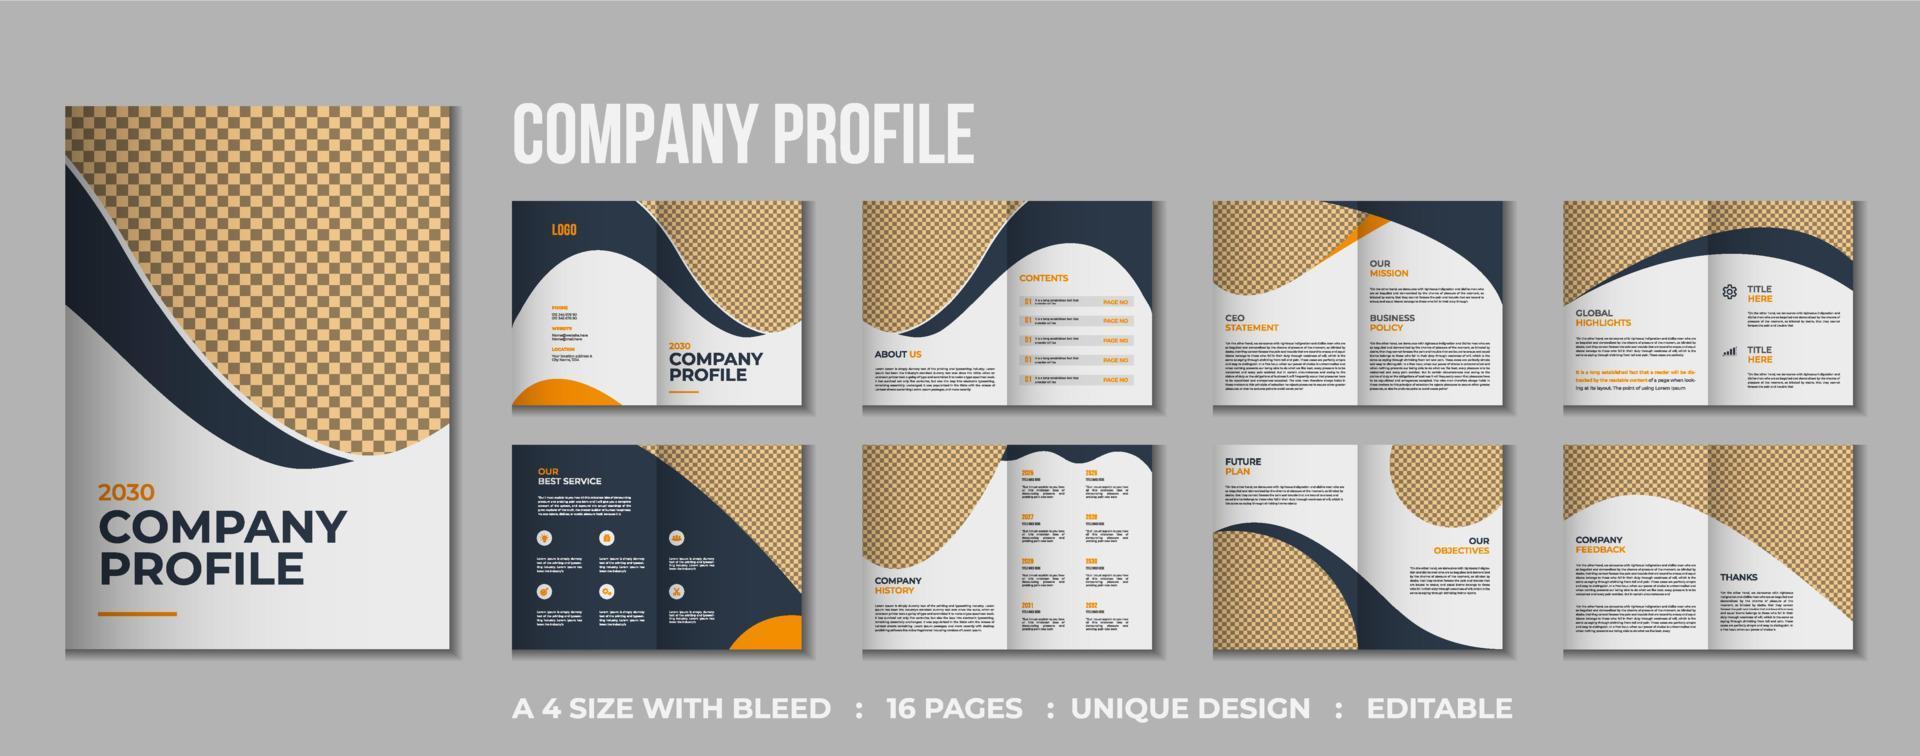 Diseño de maqueta de folleto plegable de perfil de empresa de 16 páginas vector